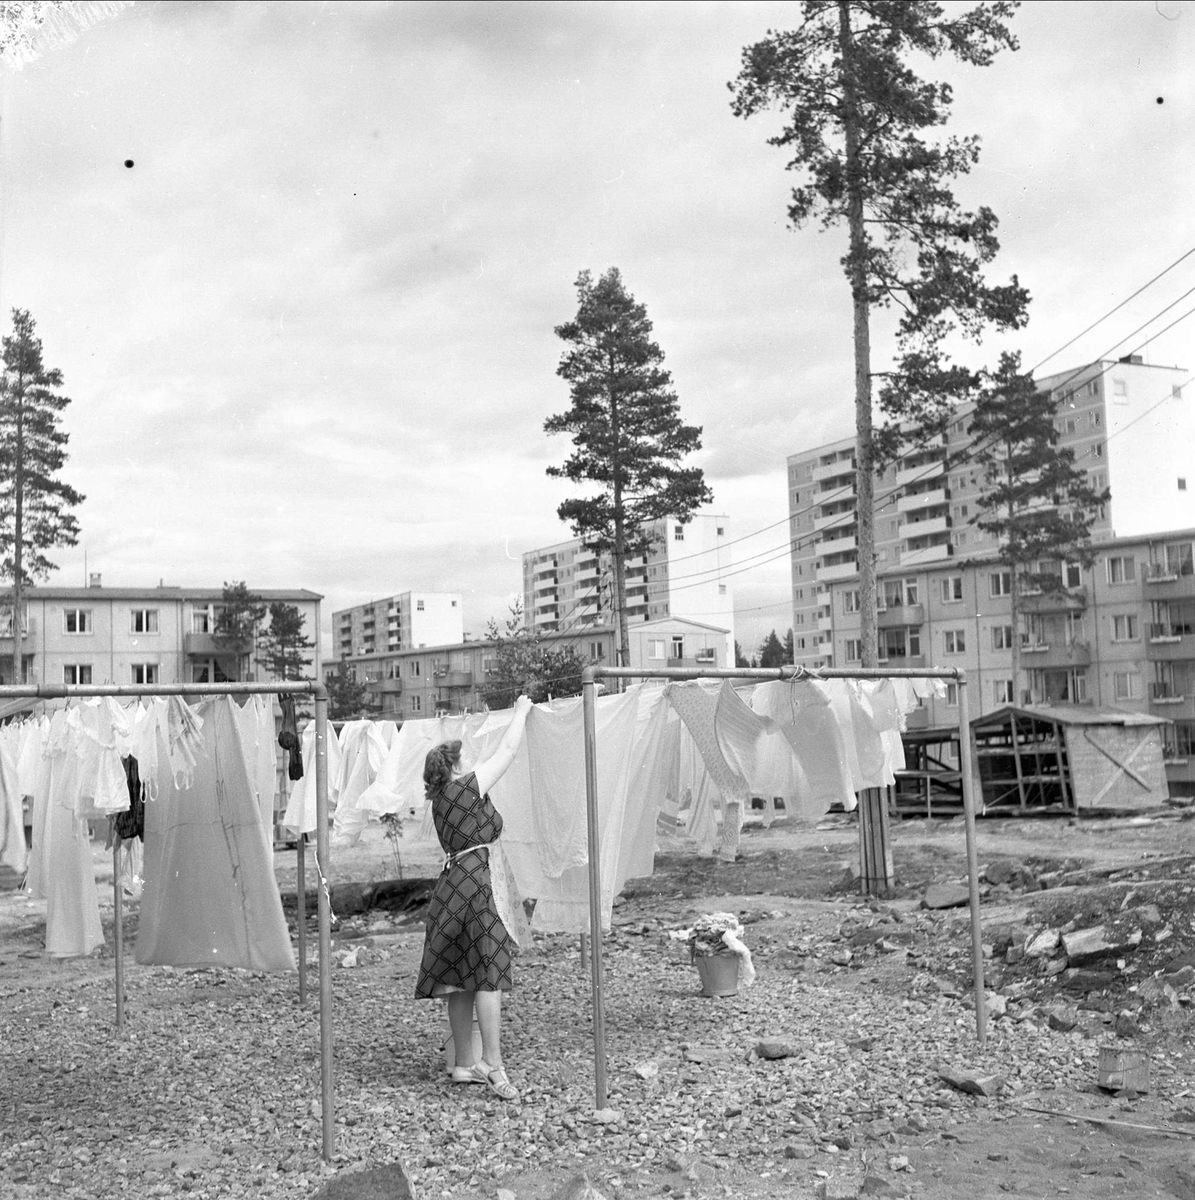 Bøler, Oslo, 03.06.1957. Byggefeltet. Kvinne, klestørk og boligblokker.